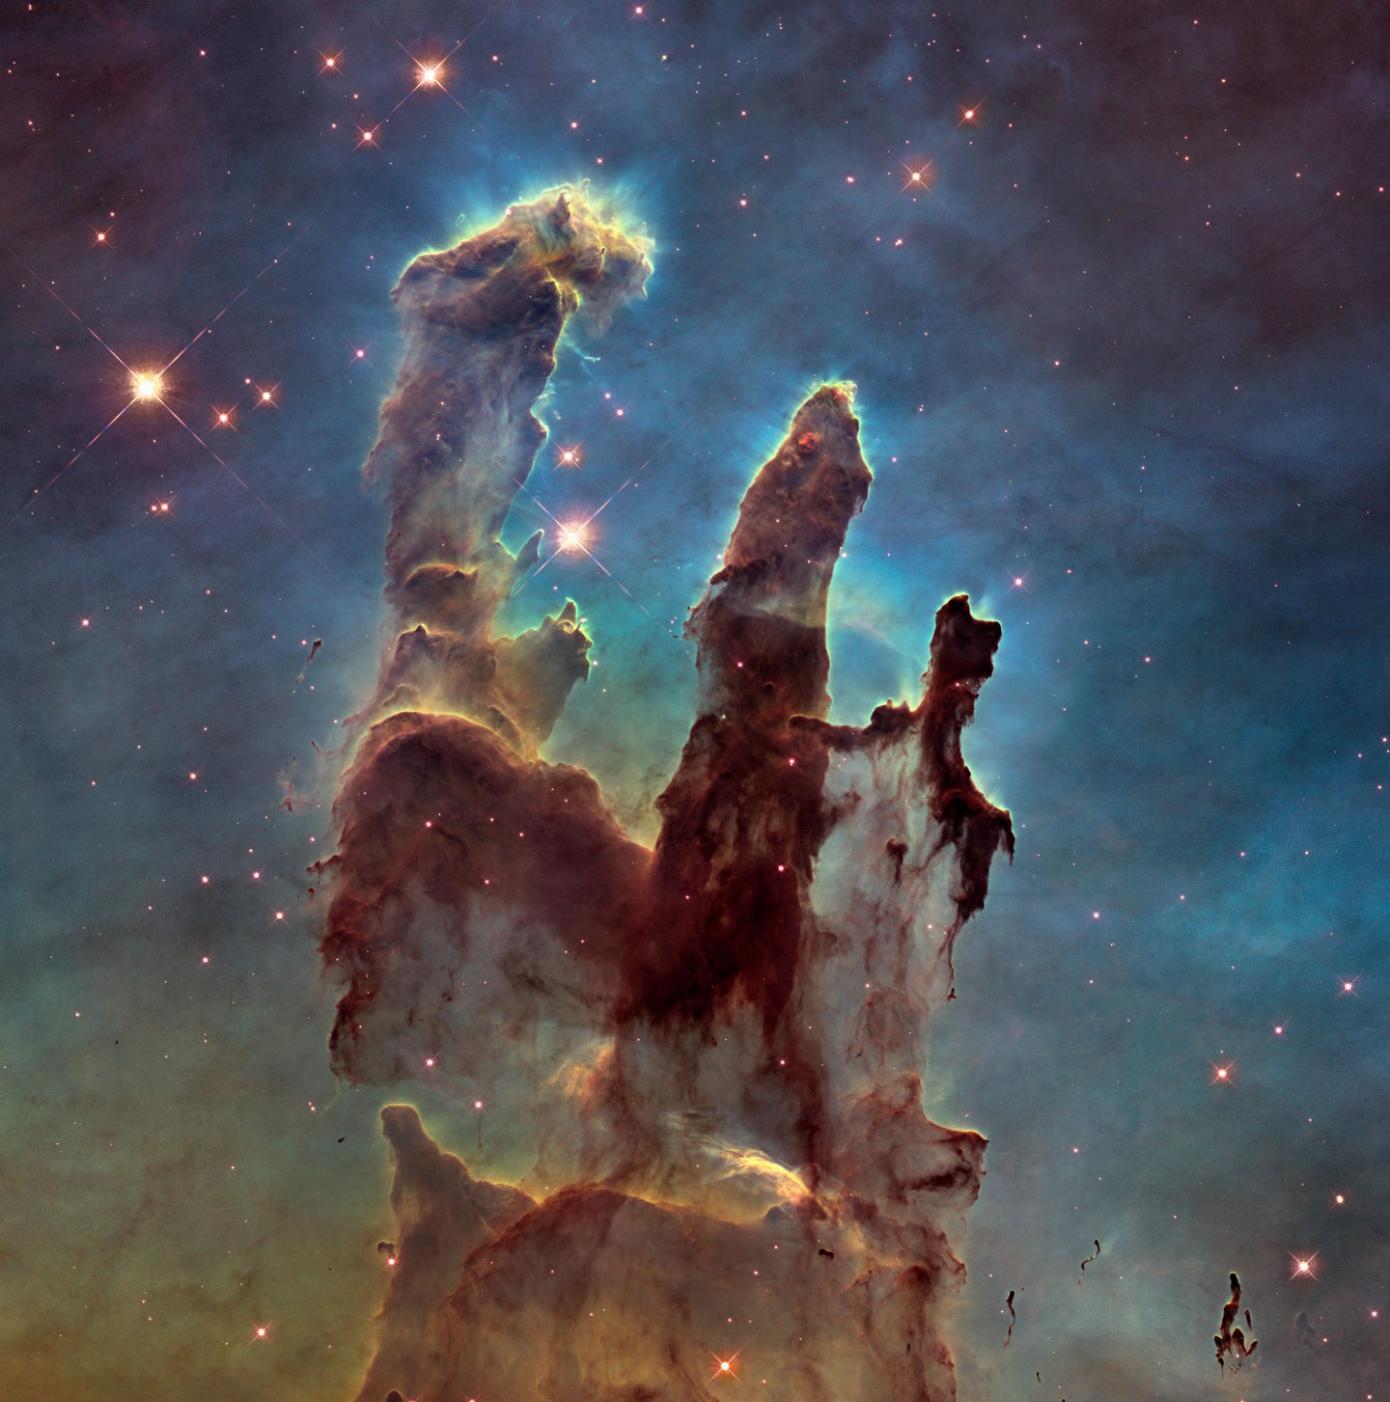 哈勃望远镜拍摄宇宙地标“创生之柱”老鹰星云M16的最新照片